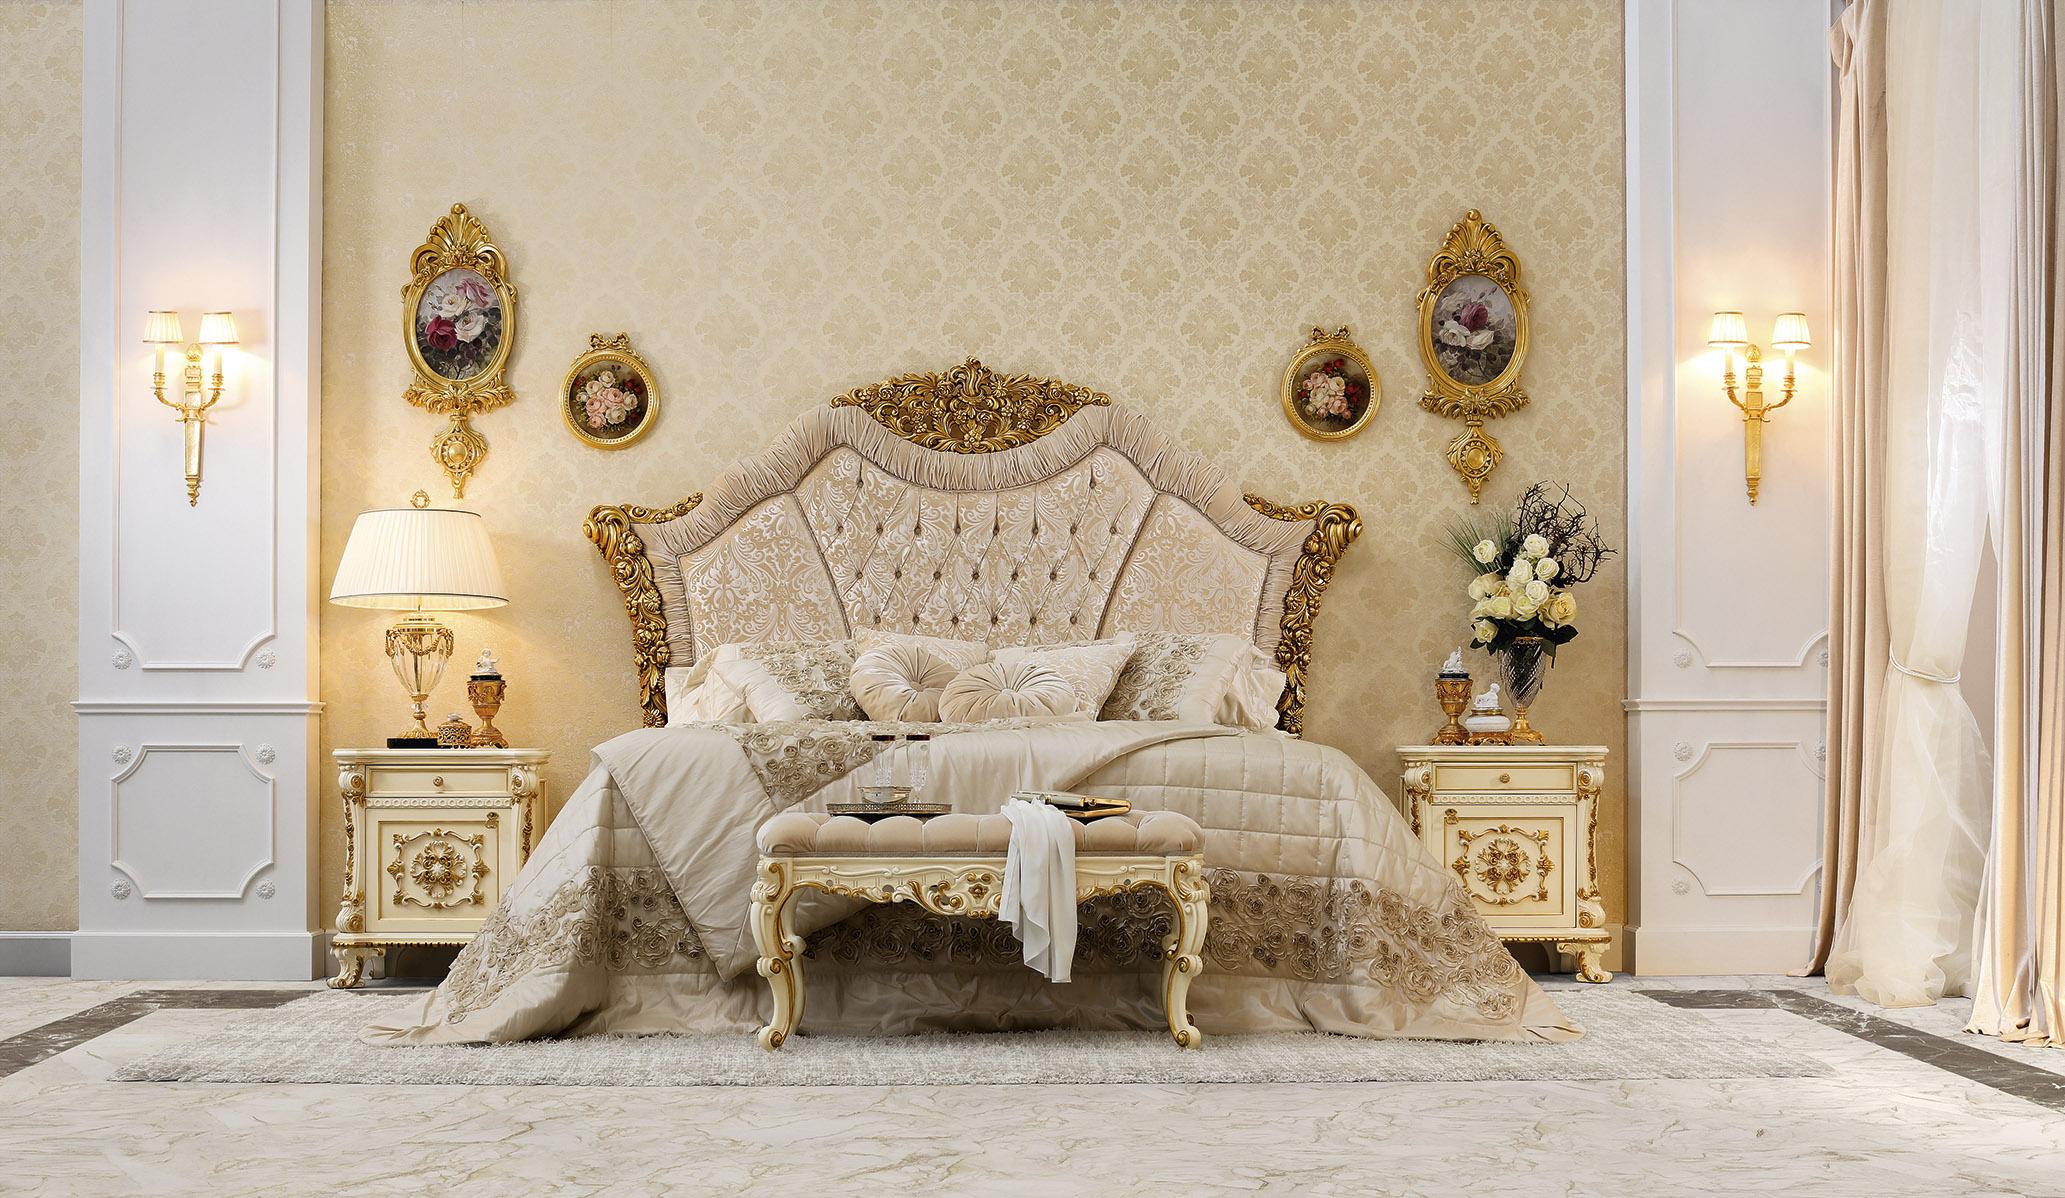 Wachen Sie auf wie ein Mitglied der königlichen Familie und bewundern Sie sich selbst, während Sie auf diesem raffinierten Ankleidezimmer von Modenese Gastone Interiors, einem italienischen Luxushersteller, sitzen. 

Die elfenbeinfarbene